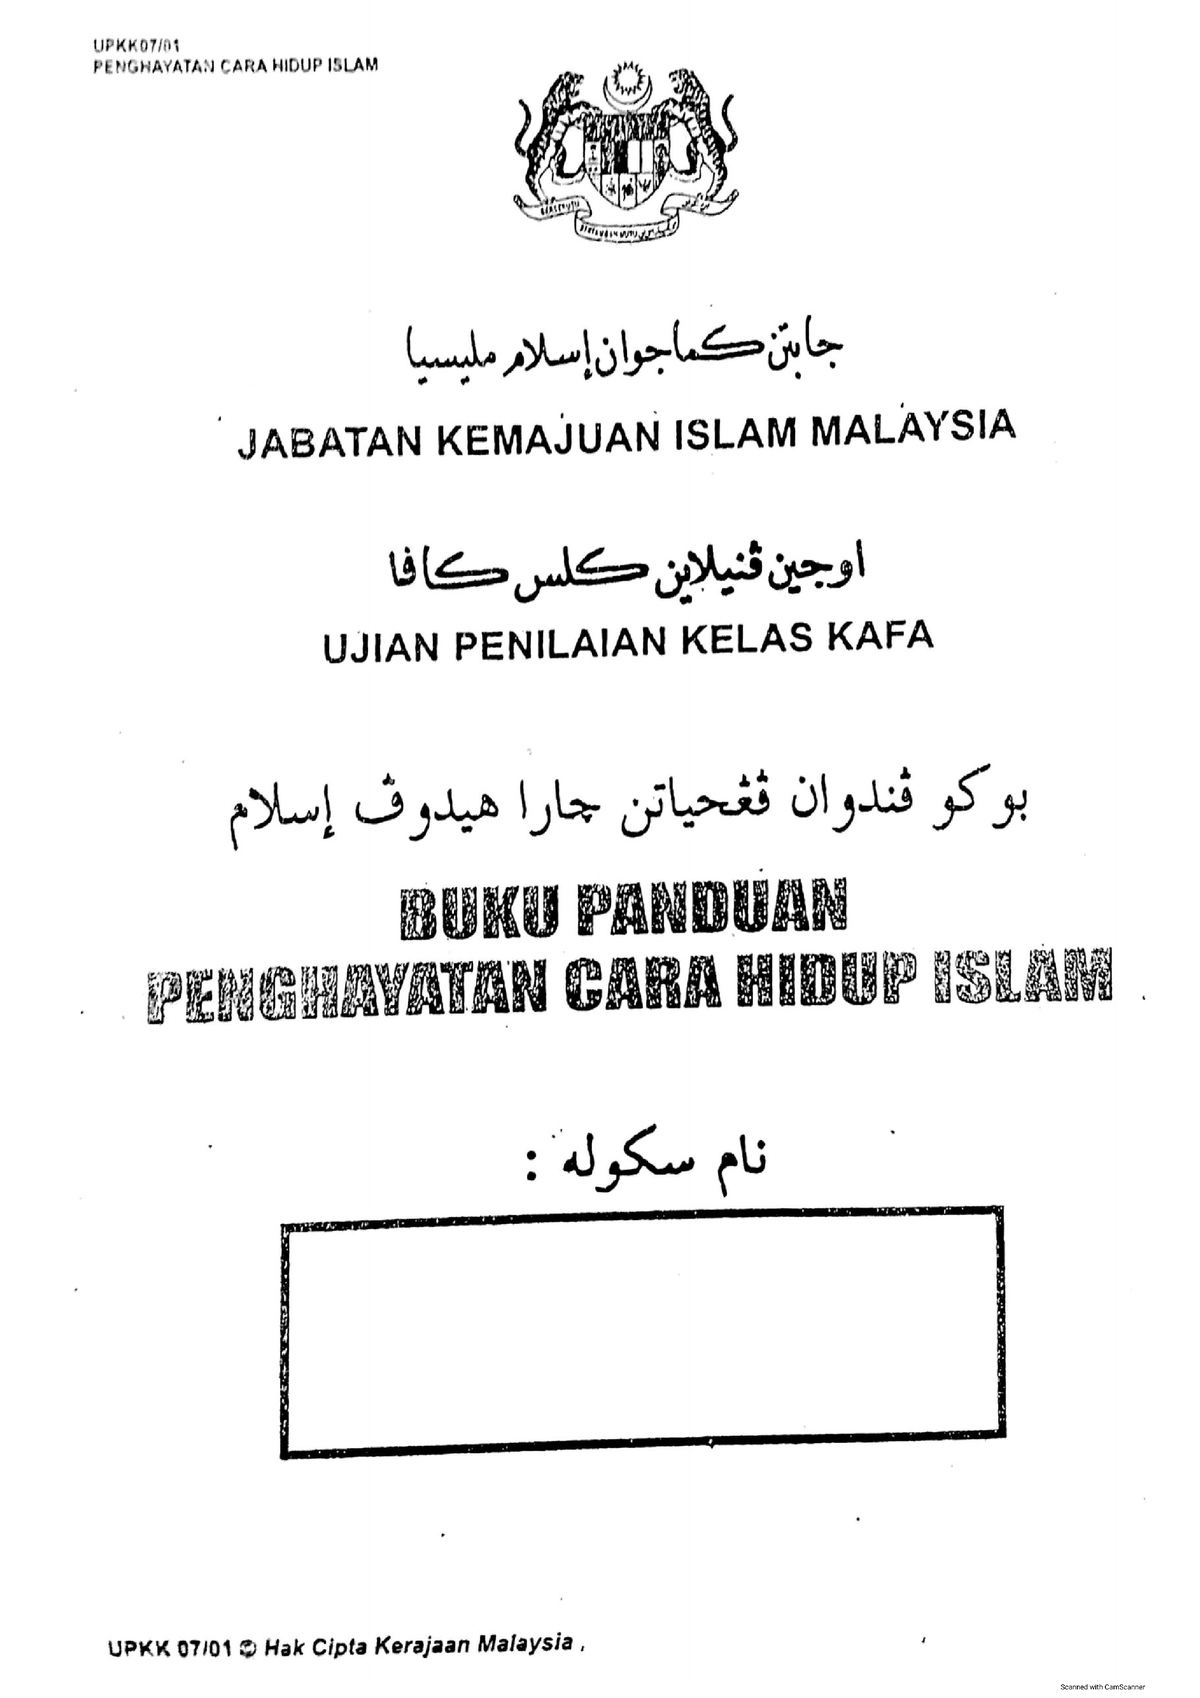 Penghayatan Cara Hidup Islam(PCHI) UPKK  Ismp Pendidikan Islam  Studocu